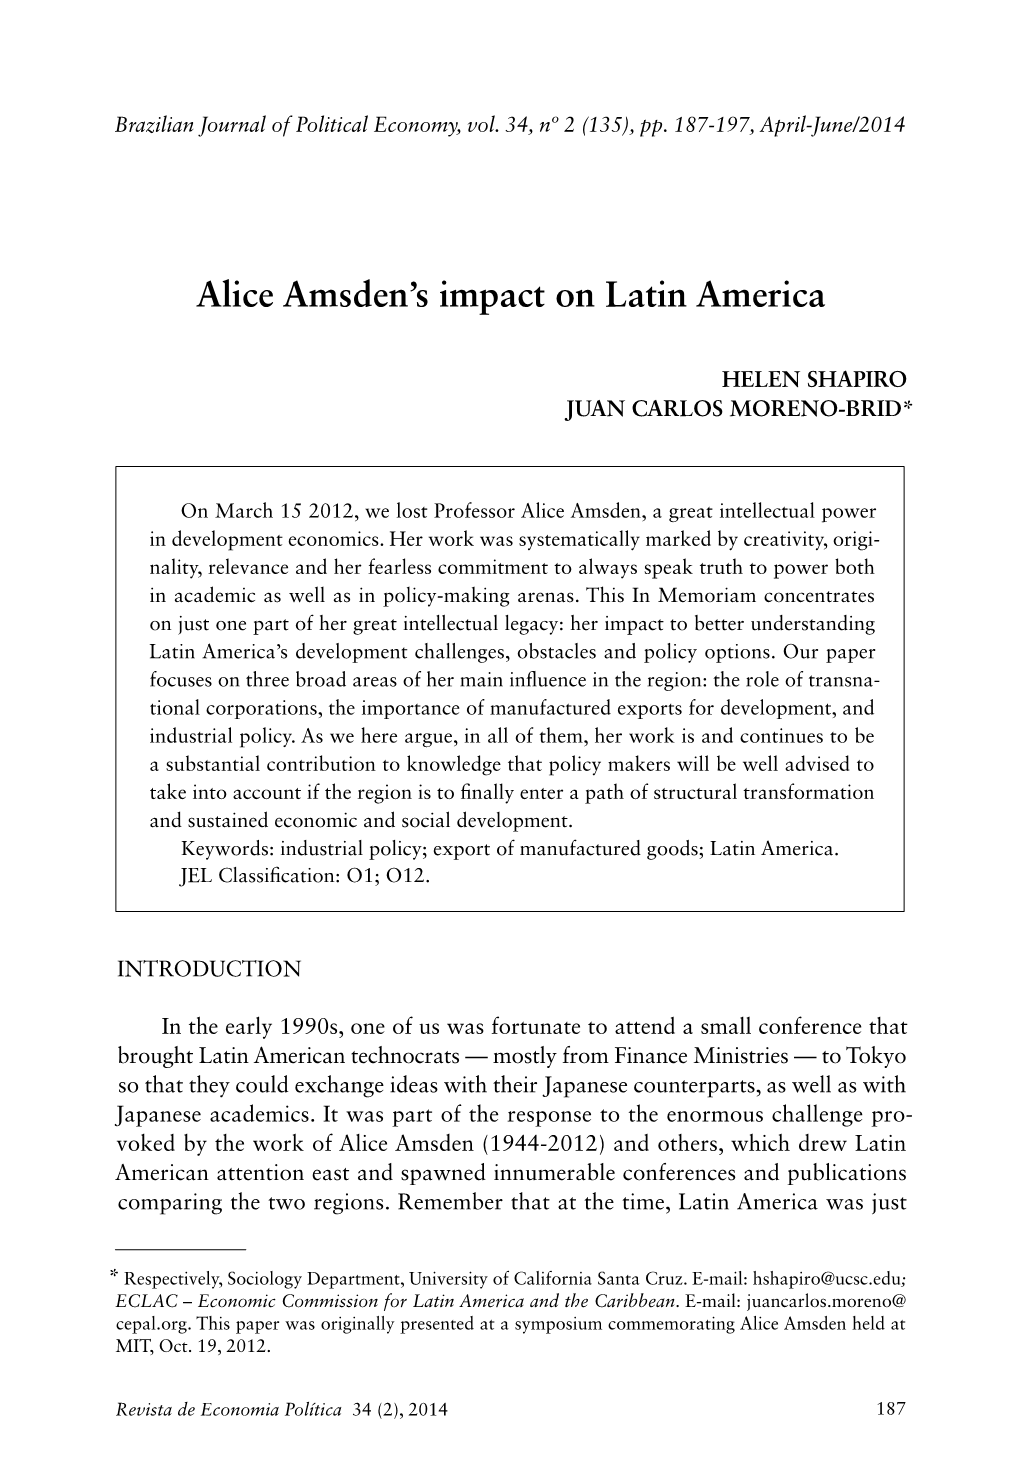 Alice Amsden's Impact on Latin America